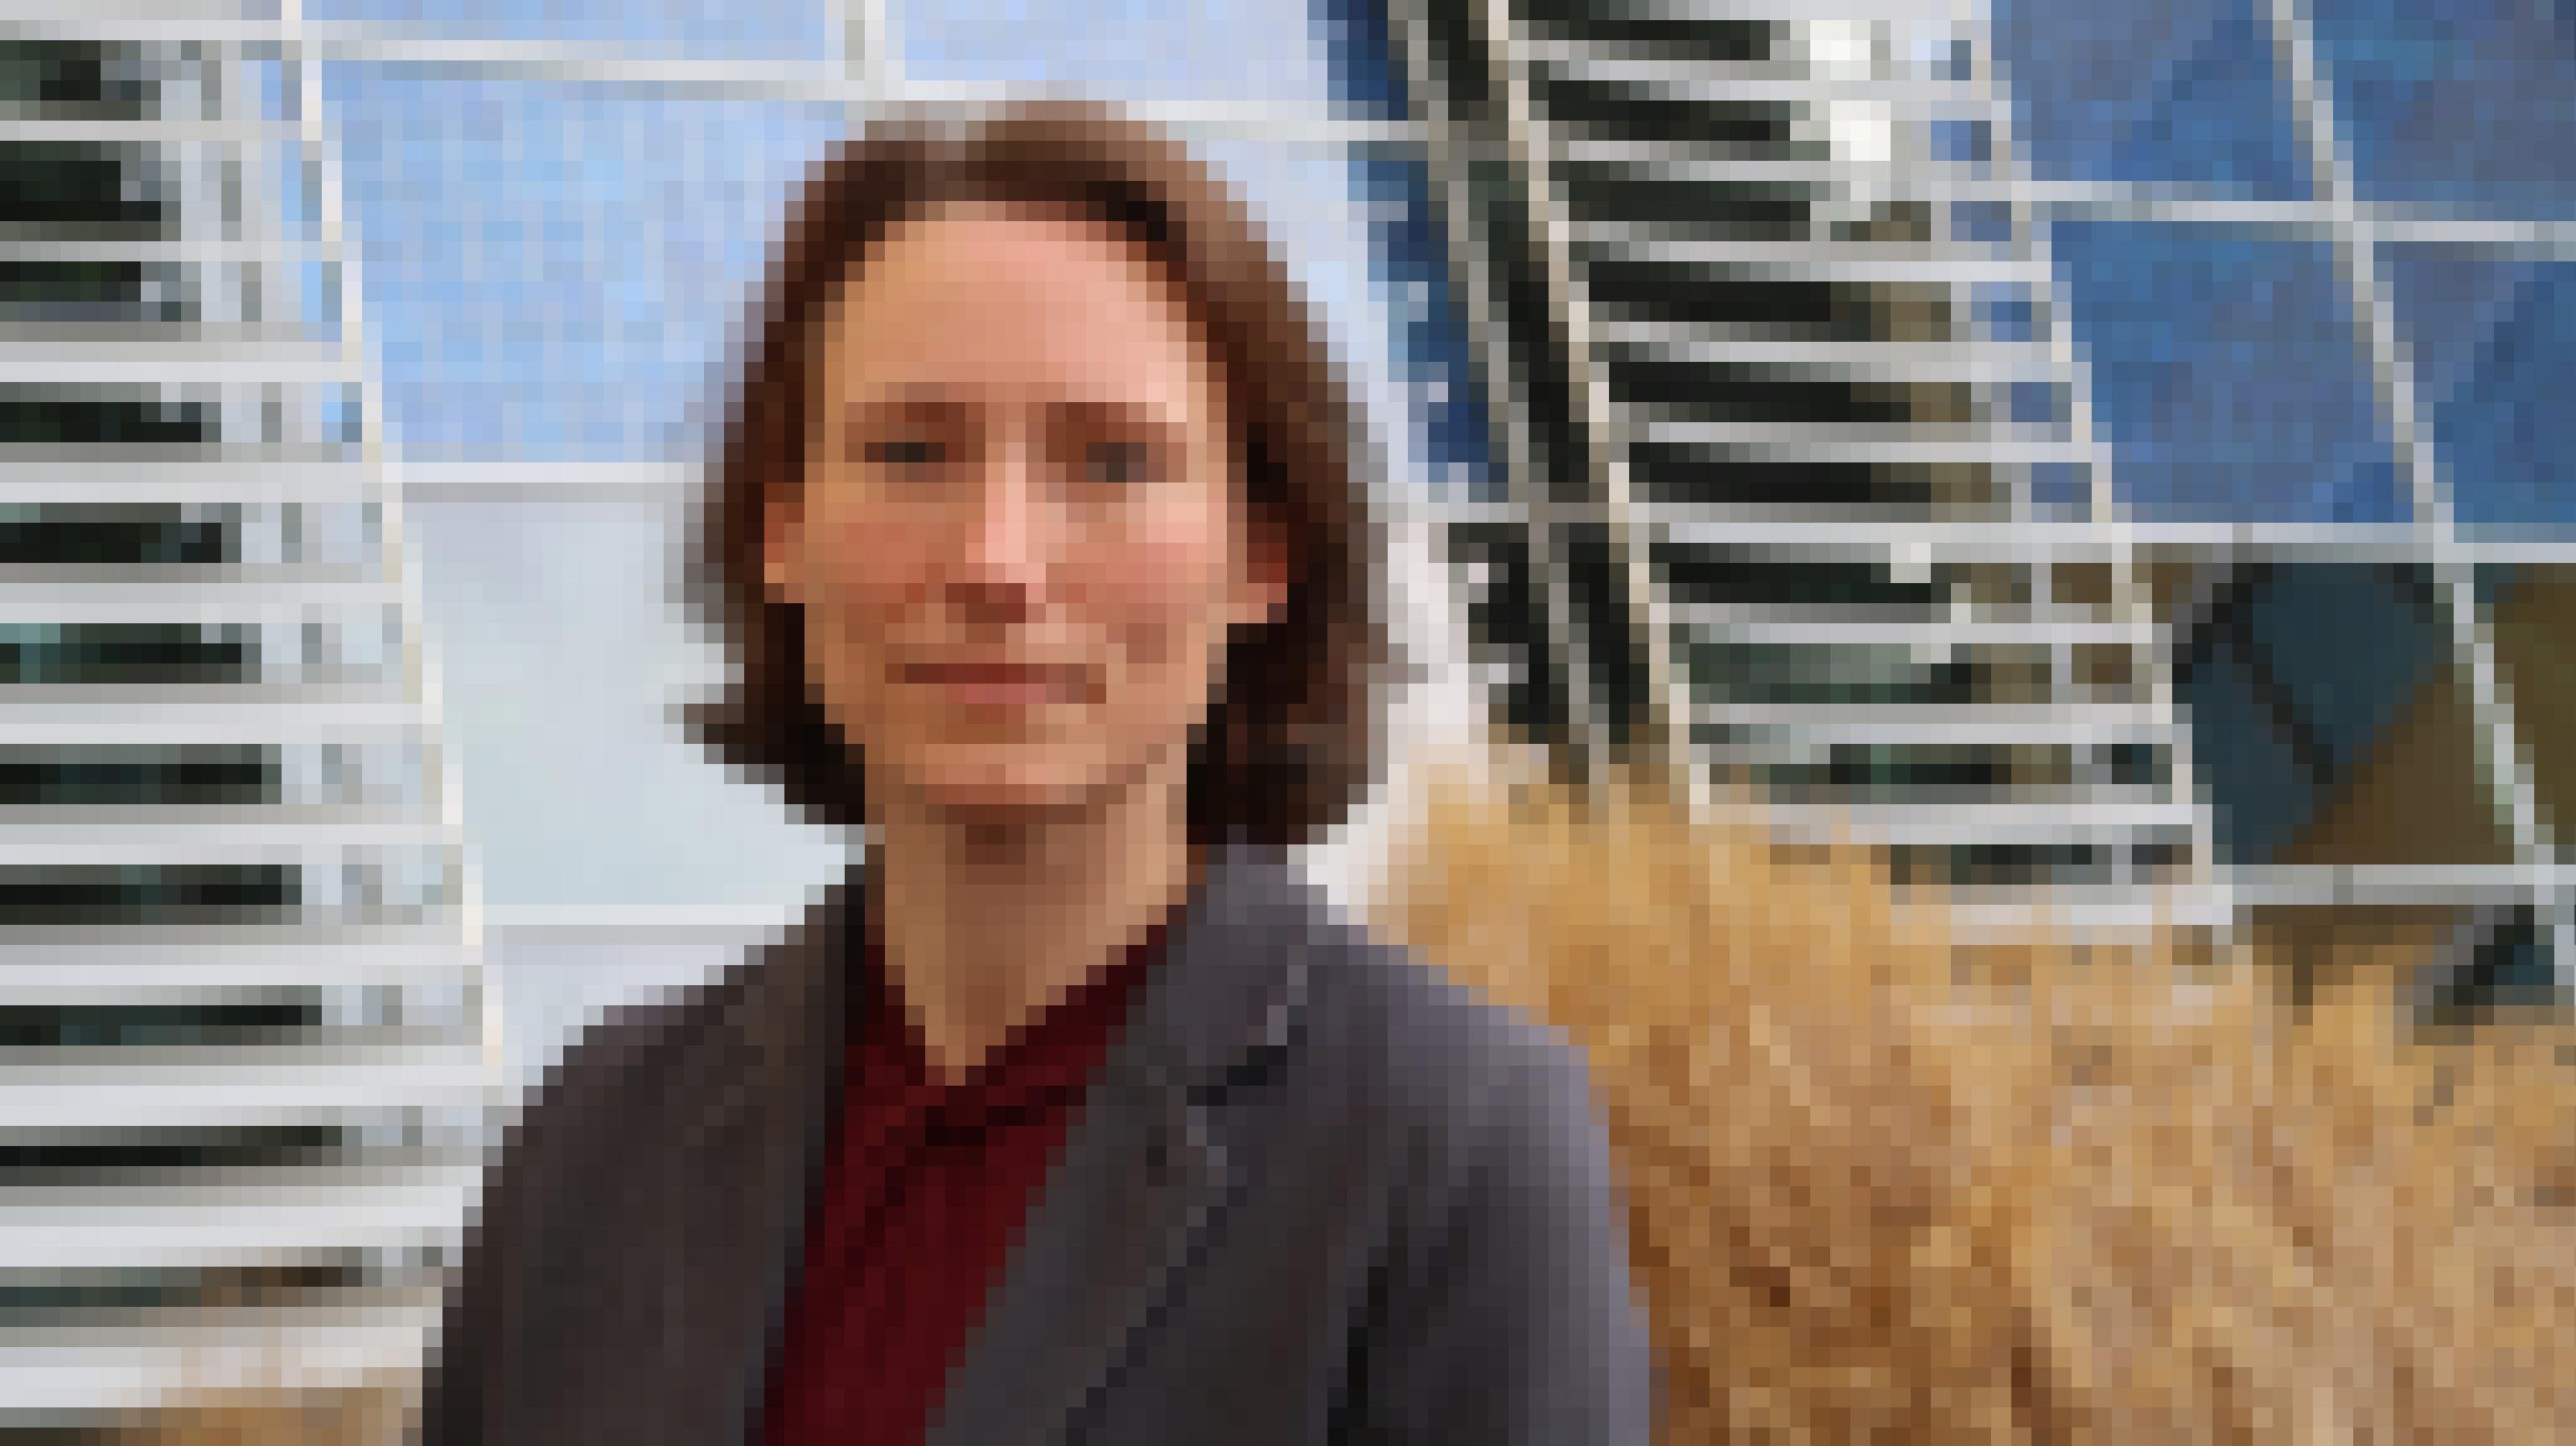 Energie-Expertin Anke Weidlich im Innenhof ihres Instituts. Im Hintergrund sind PV-Module zu sehen, die Strom erzeugen